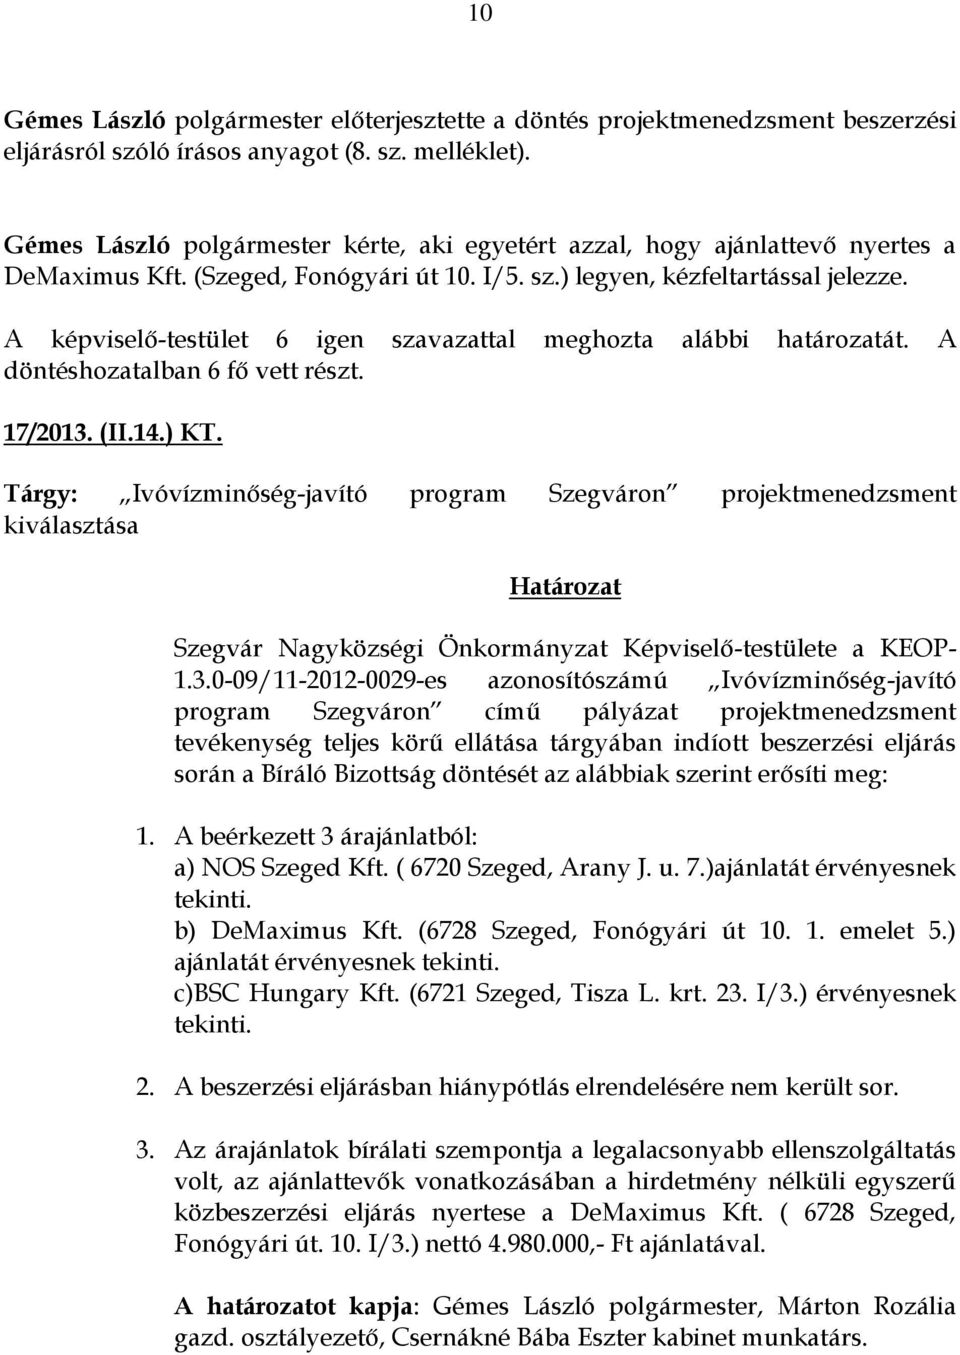 Tárgy: Ivóvízminőség-javító program Szegváron projektmenedzsment kiválasztása Szegvár Nagyközségi Önkormányzat Képviselő-testülete a KEOP- 1.3.